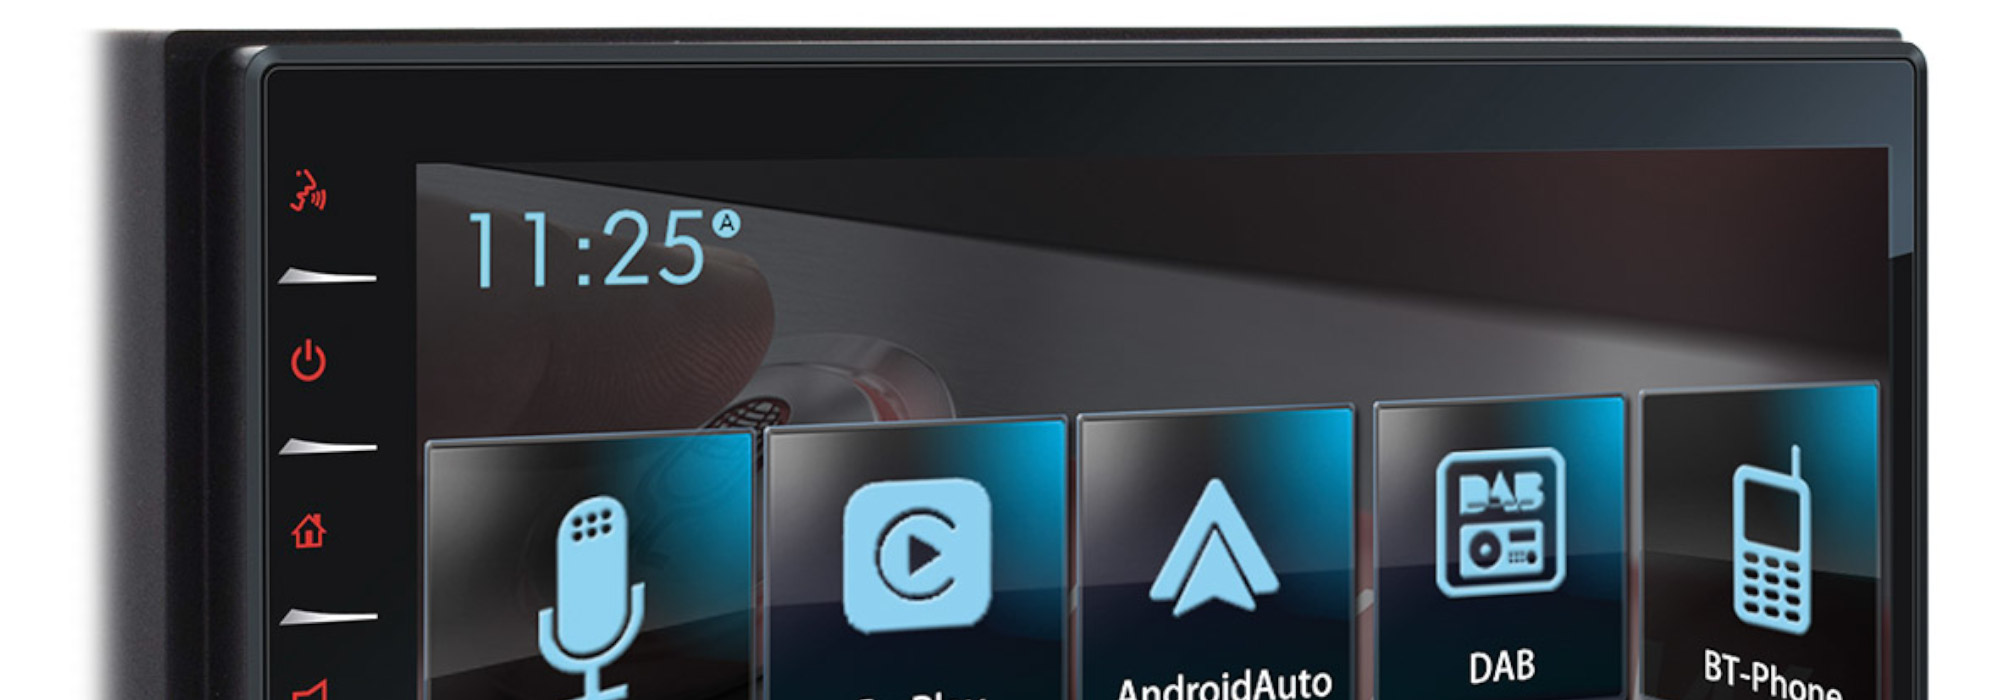 T-CPA70 DAB, il nuovo sistema multimediale di Teleco: 6,8 pollici “touch” di informazione e divertimento